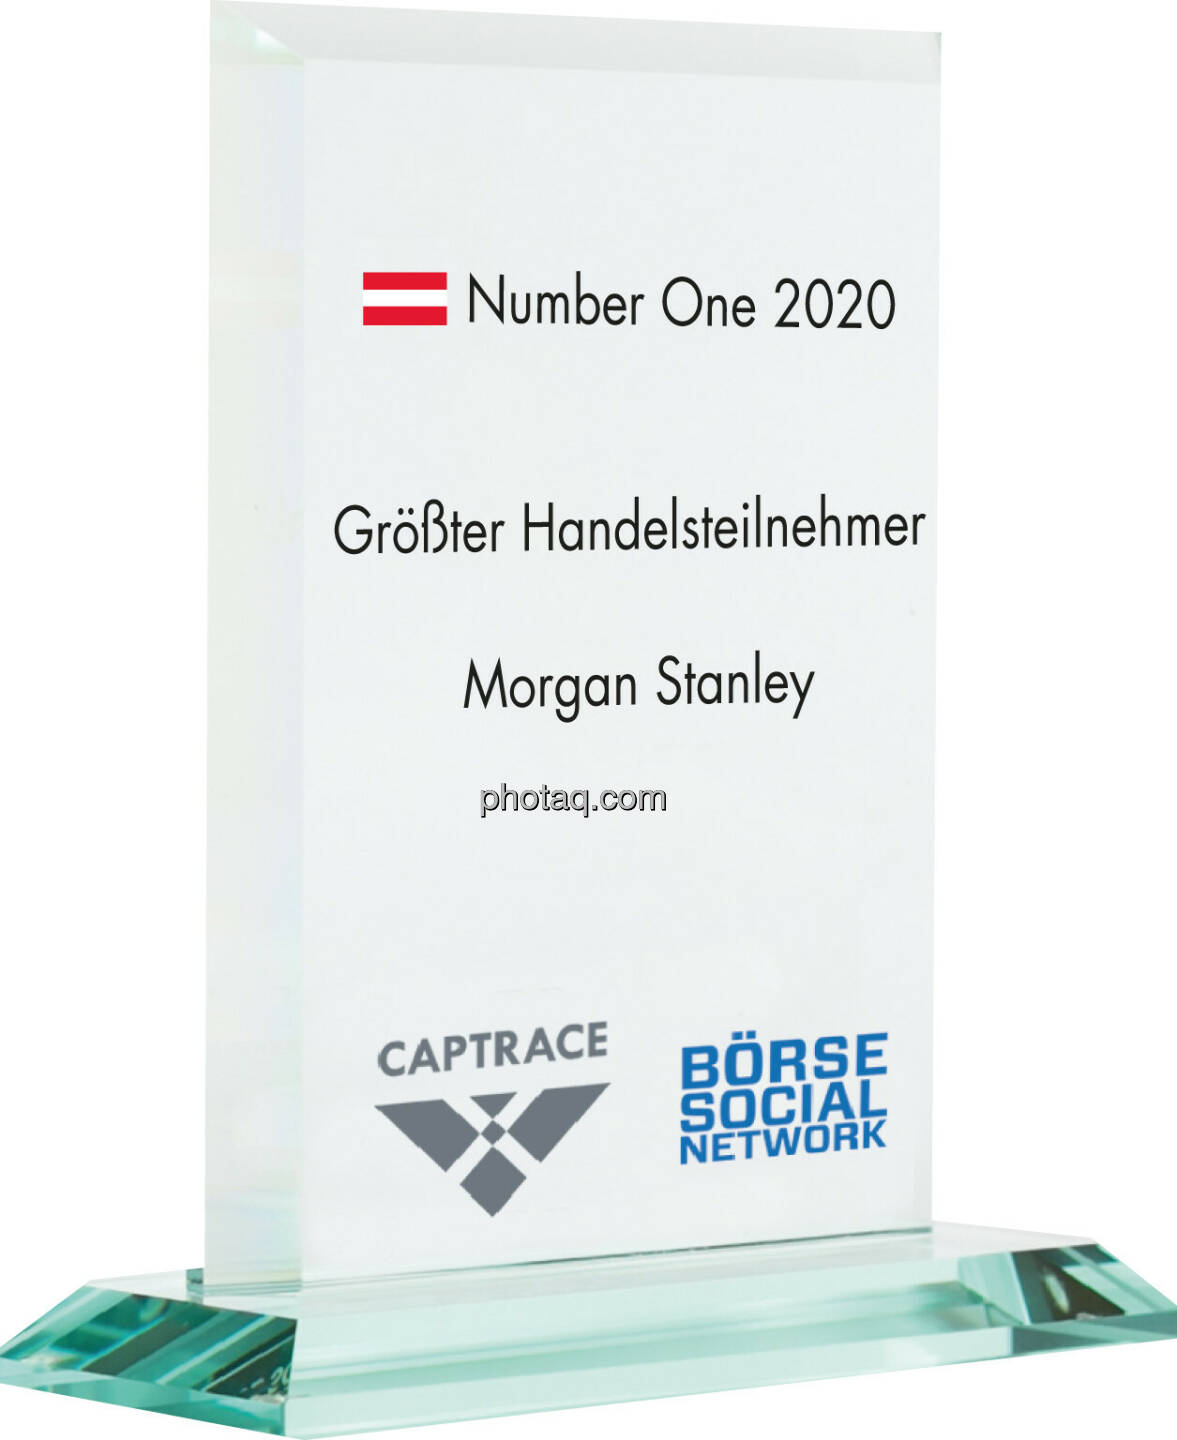 Number One Awards 2020 - Größter Handelsteilnehmer Morgan Stanley